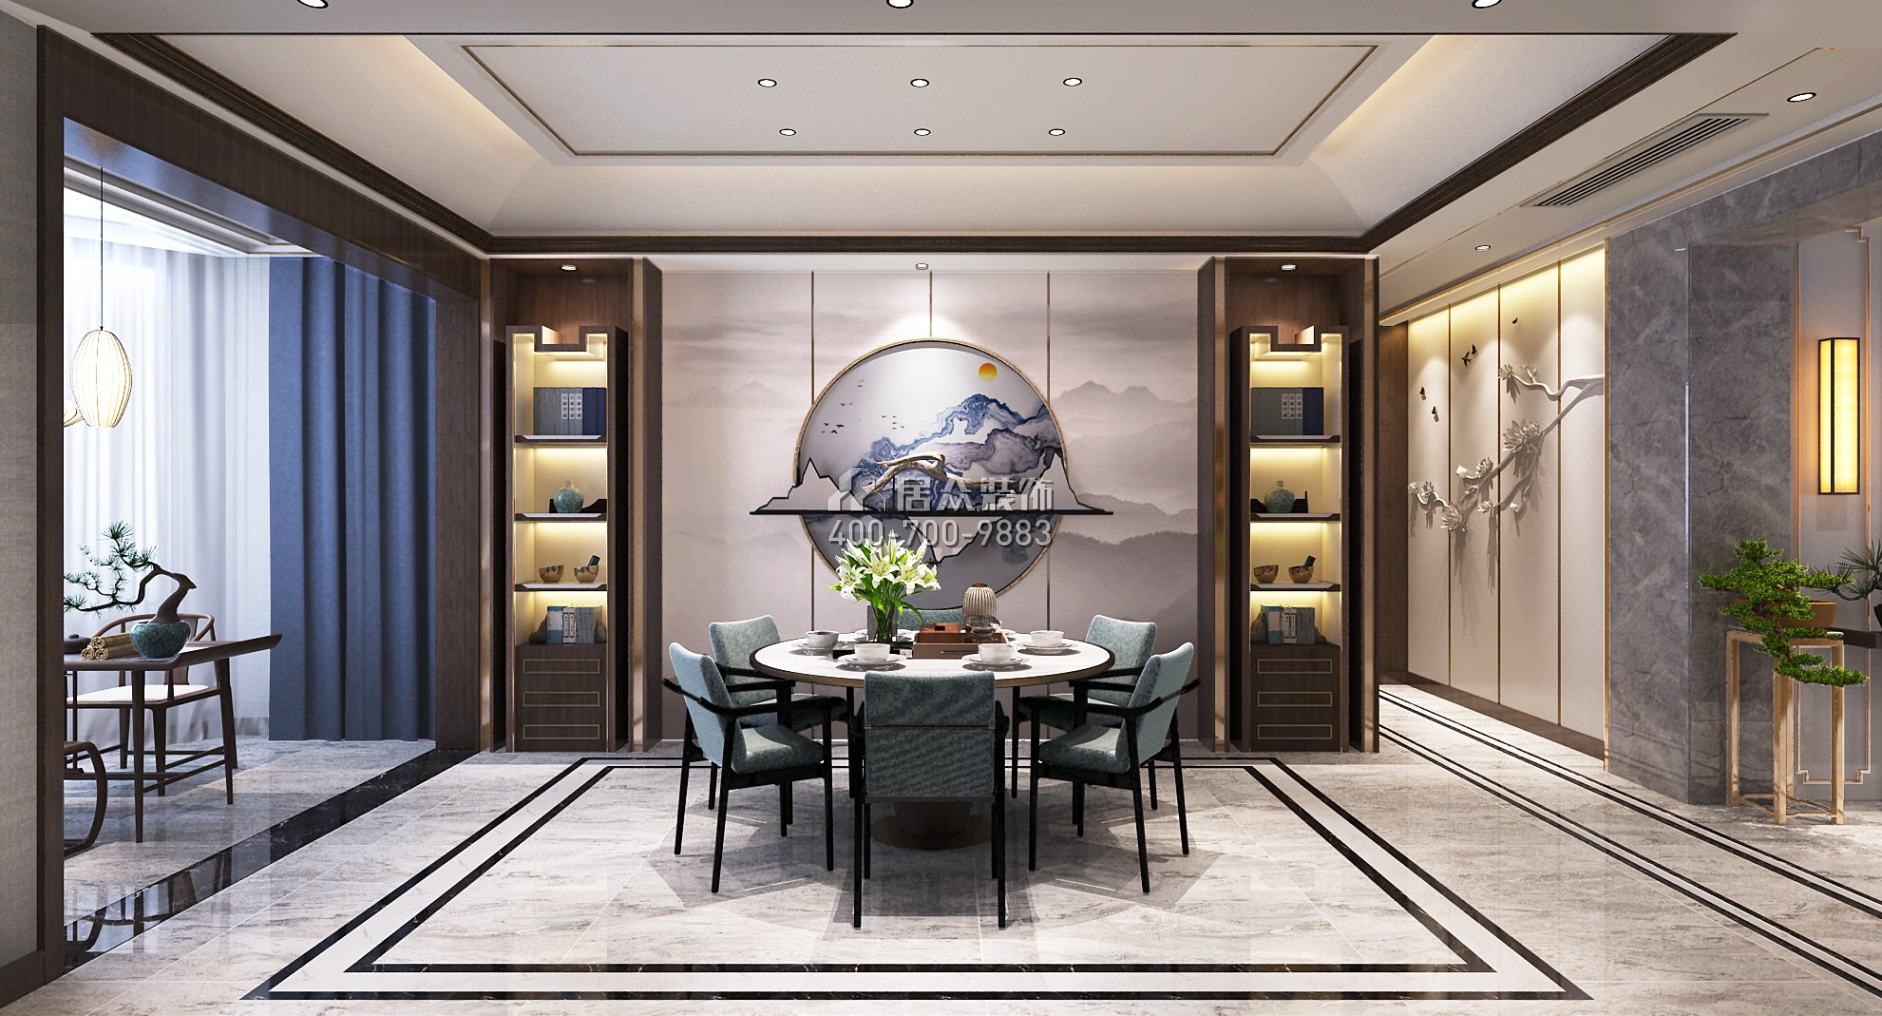 三一翡翠湾240平方米中式风格平层户型餐厅装修效果图